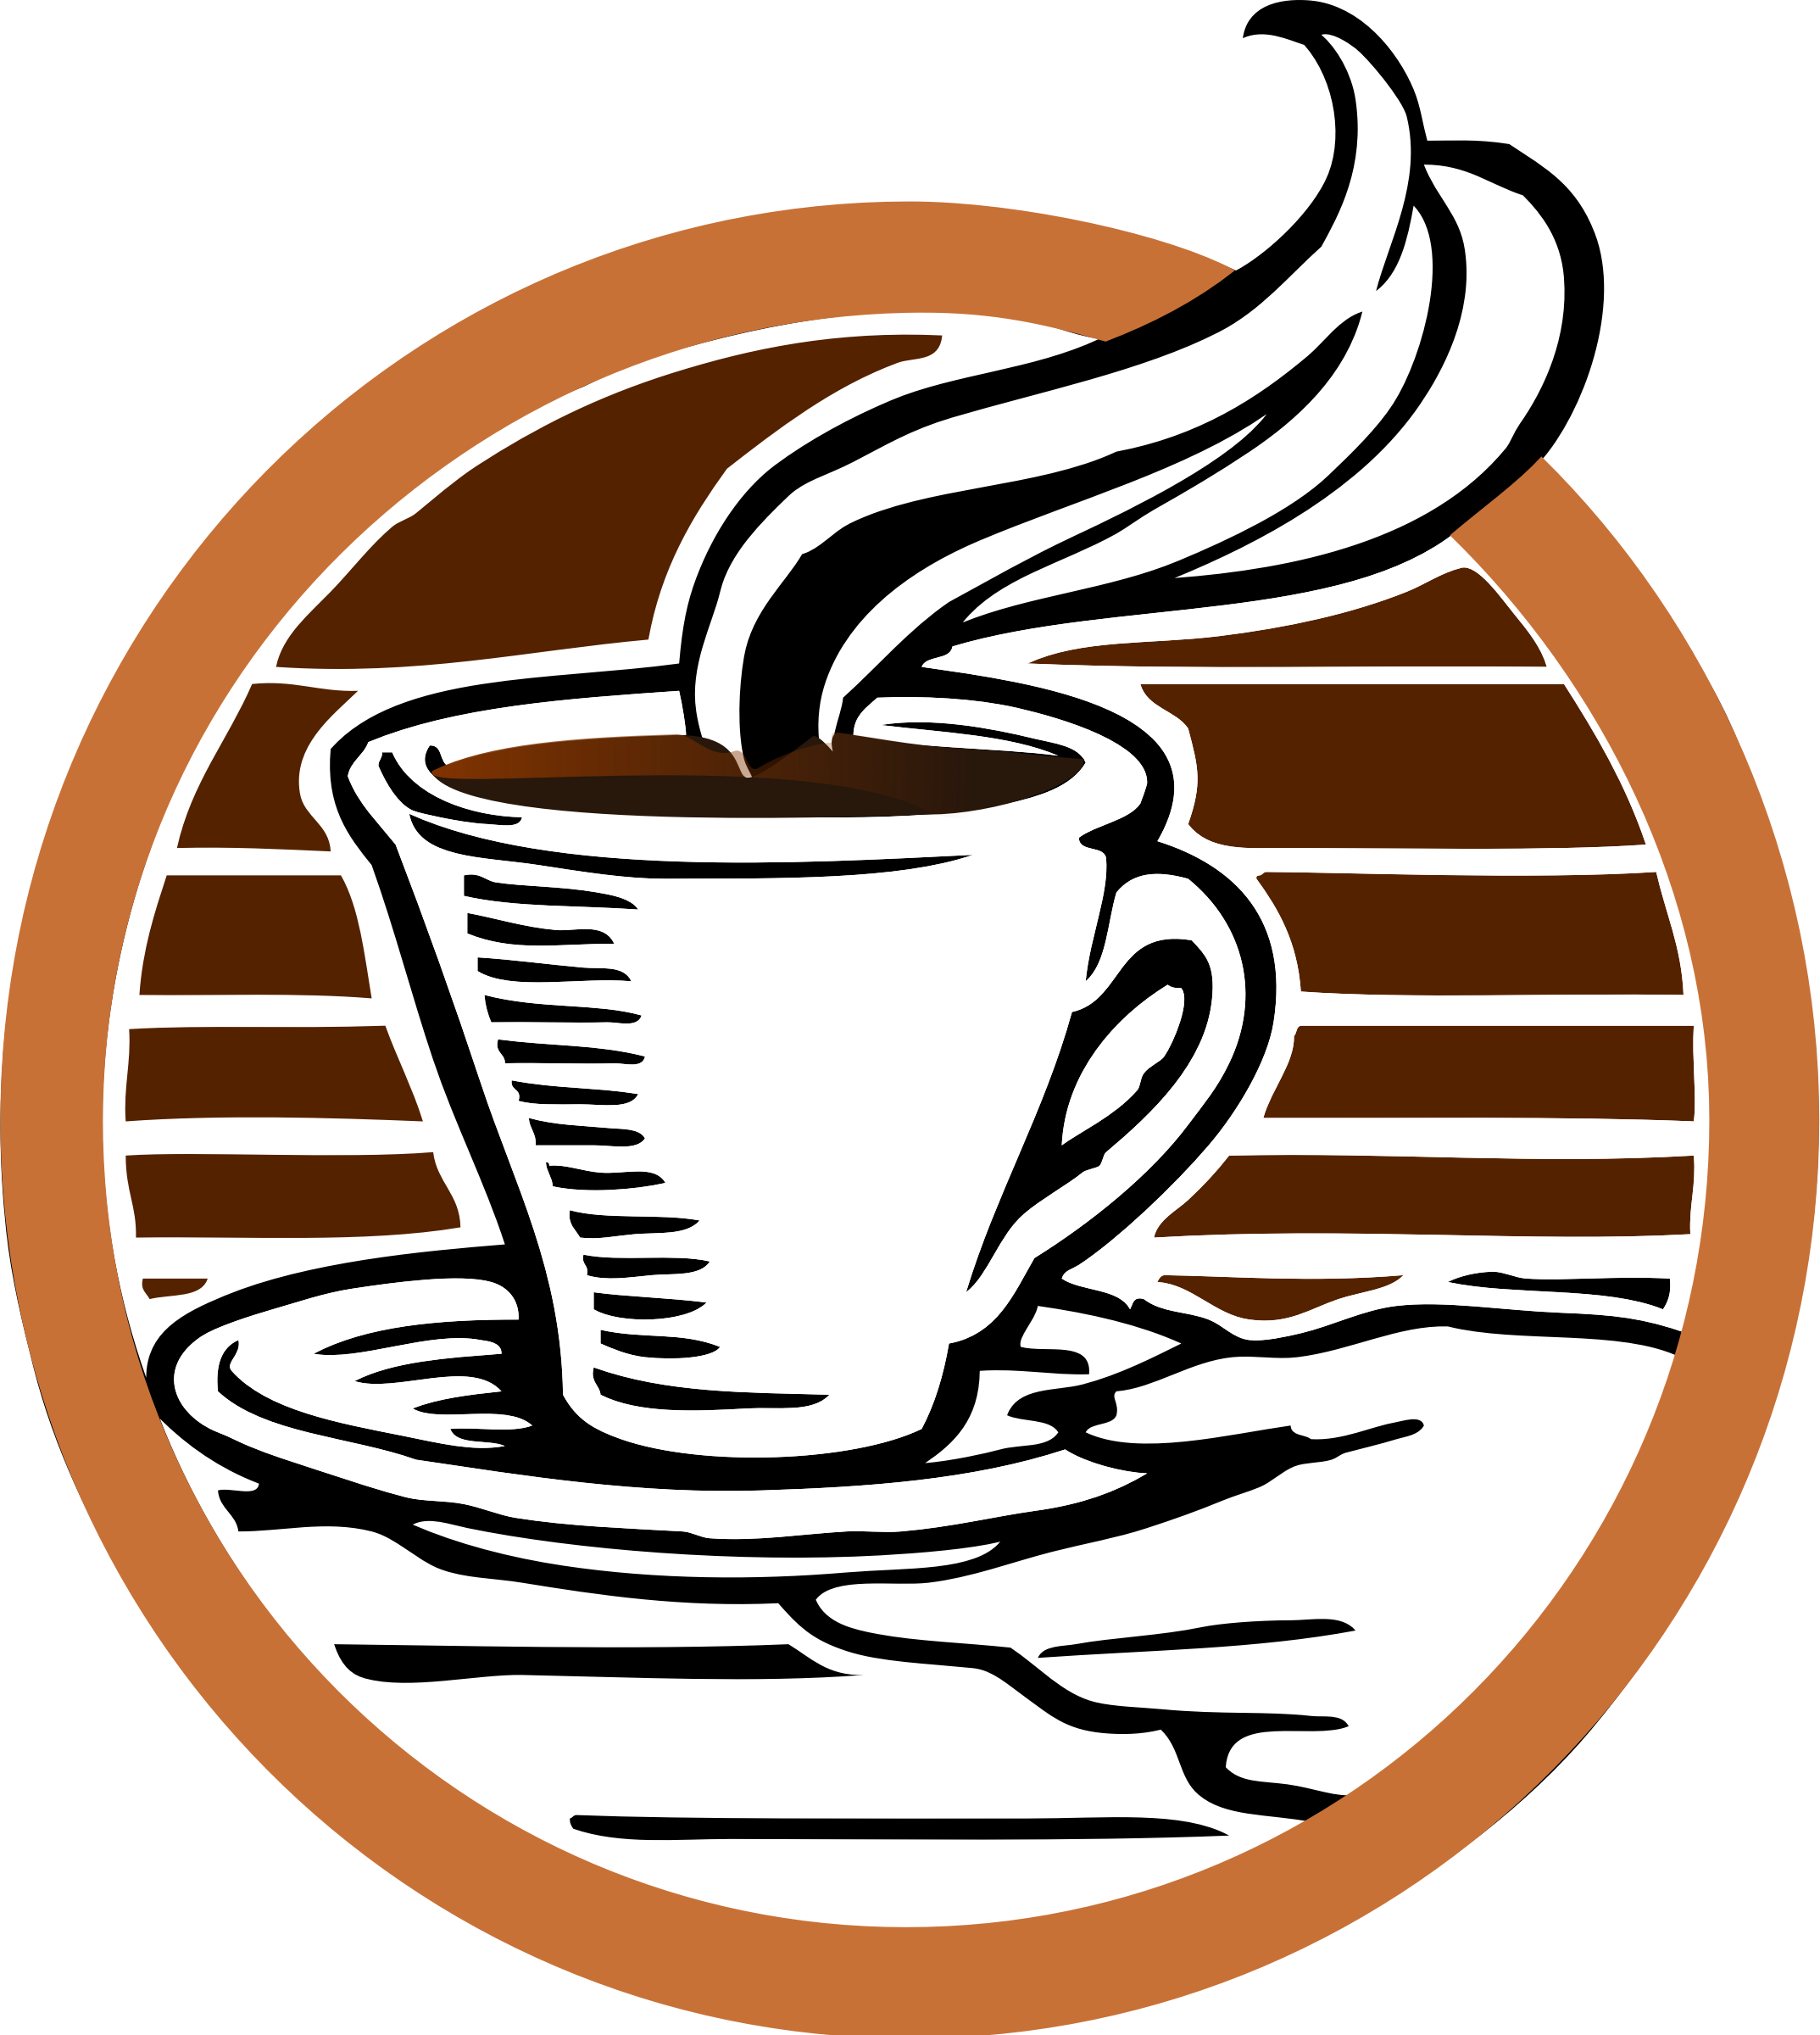 Koffie-logo Transparante achtergrond